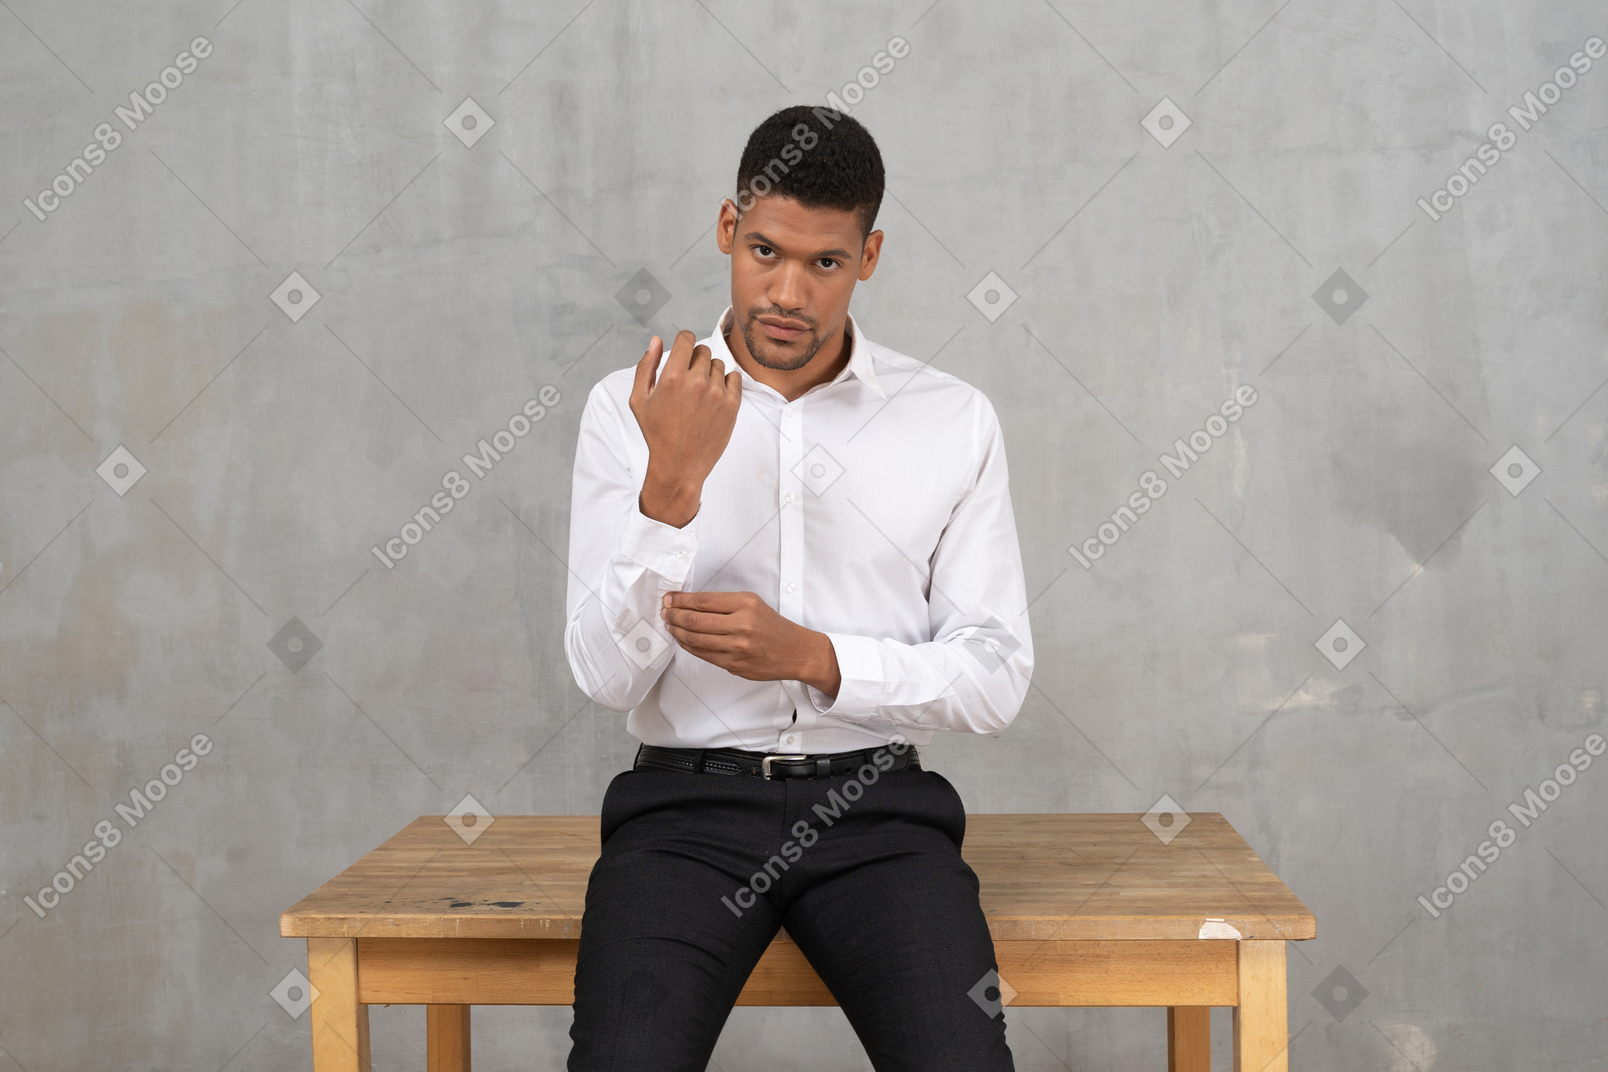 Mann in formeller kleidung sitzt auf einem tisch und fixiert seine manschette